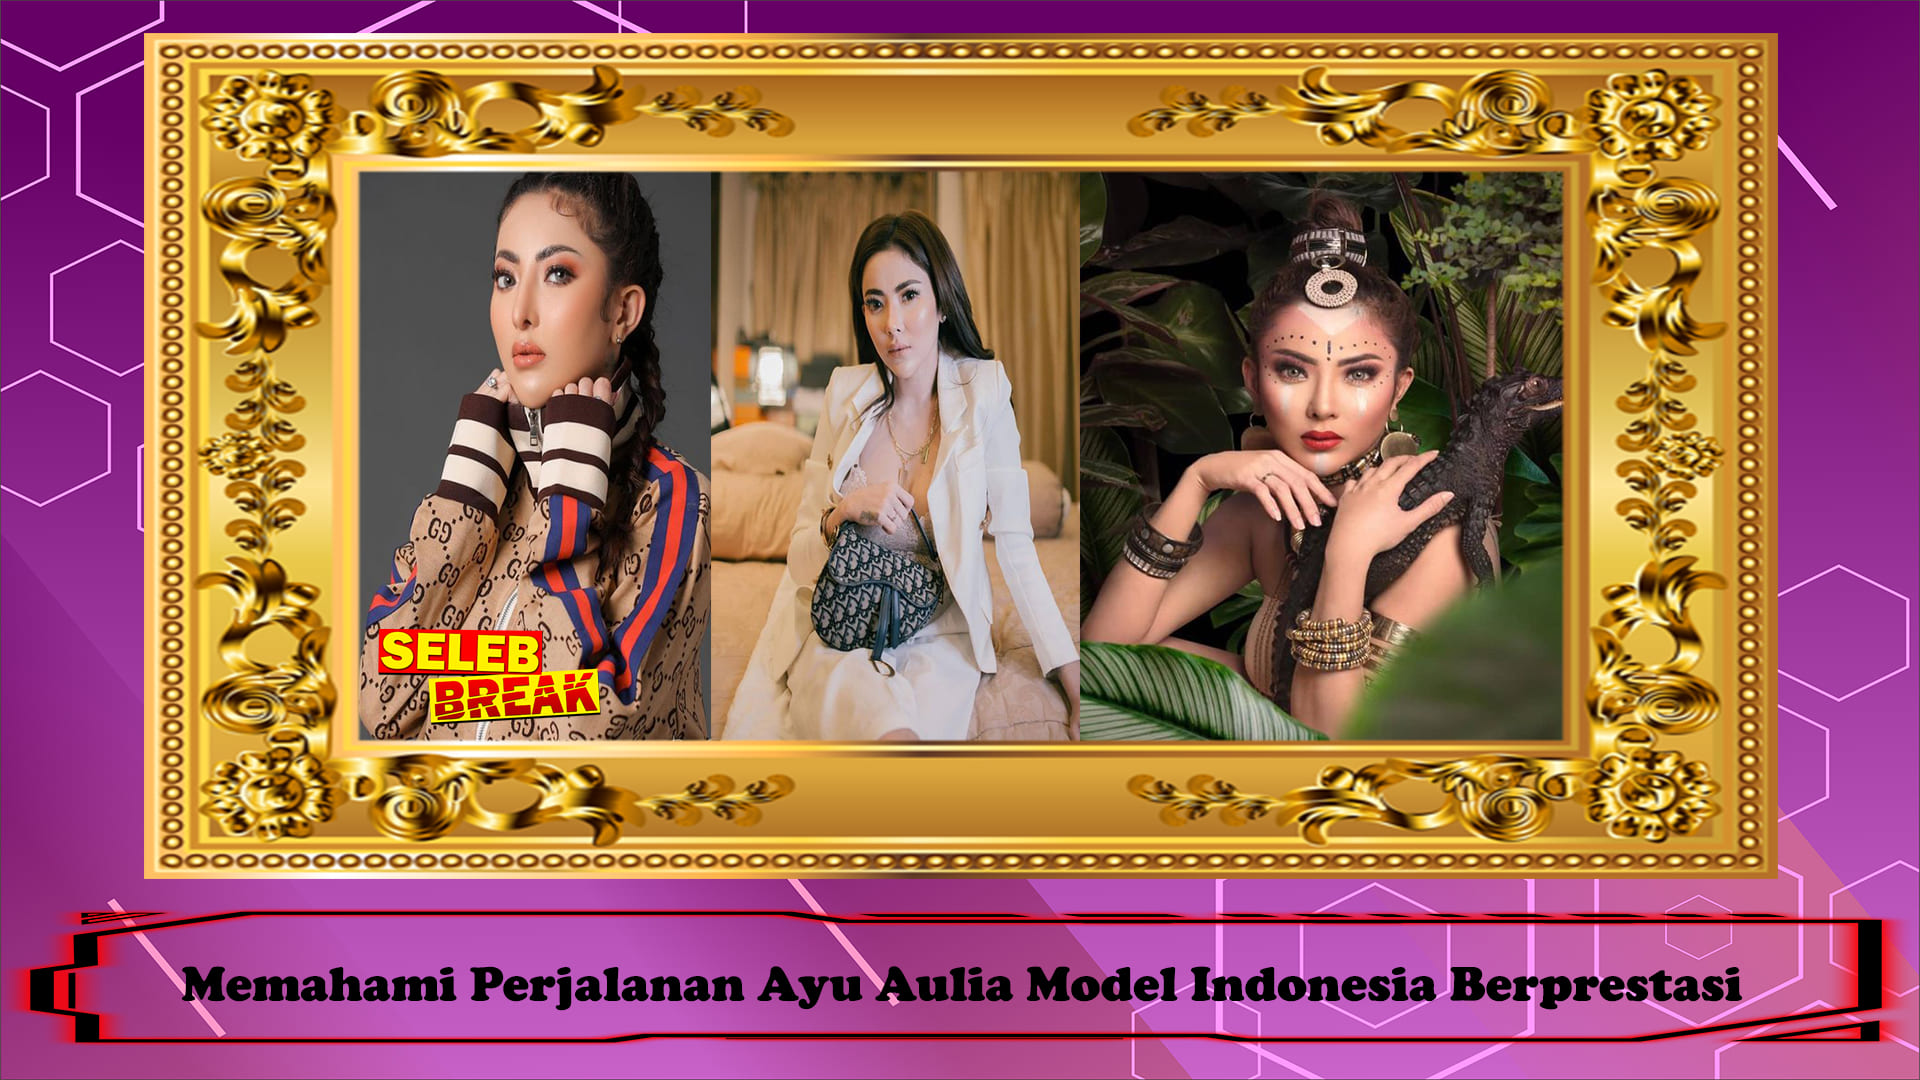 Memahami Perjalanan Ayu Aulia Model Indonesia Berprestasi